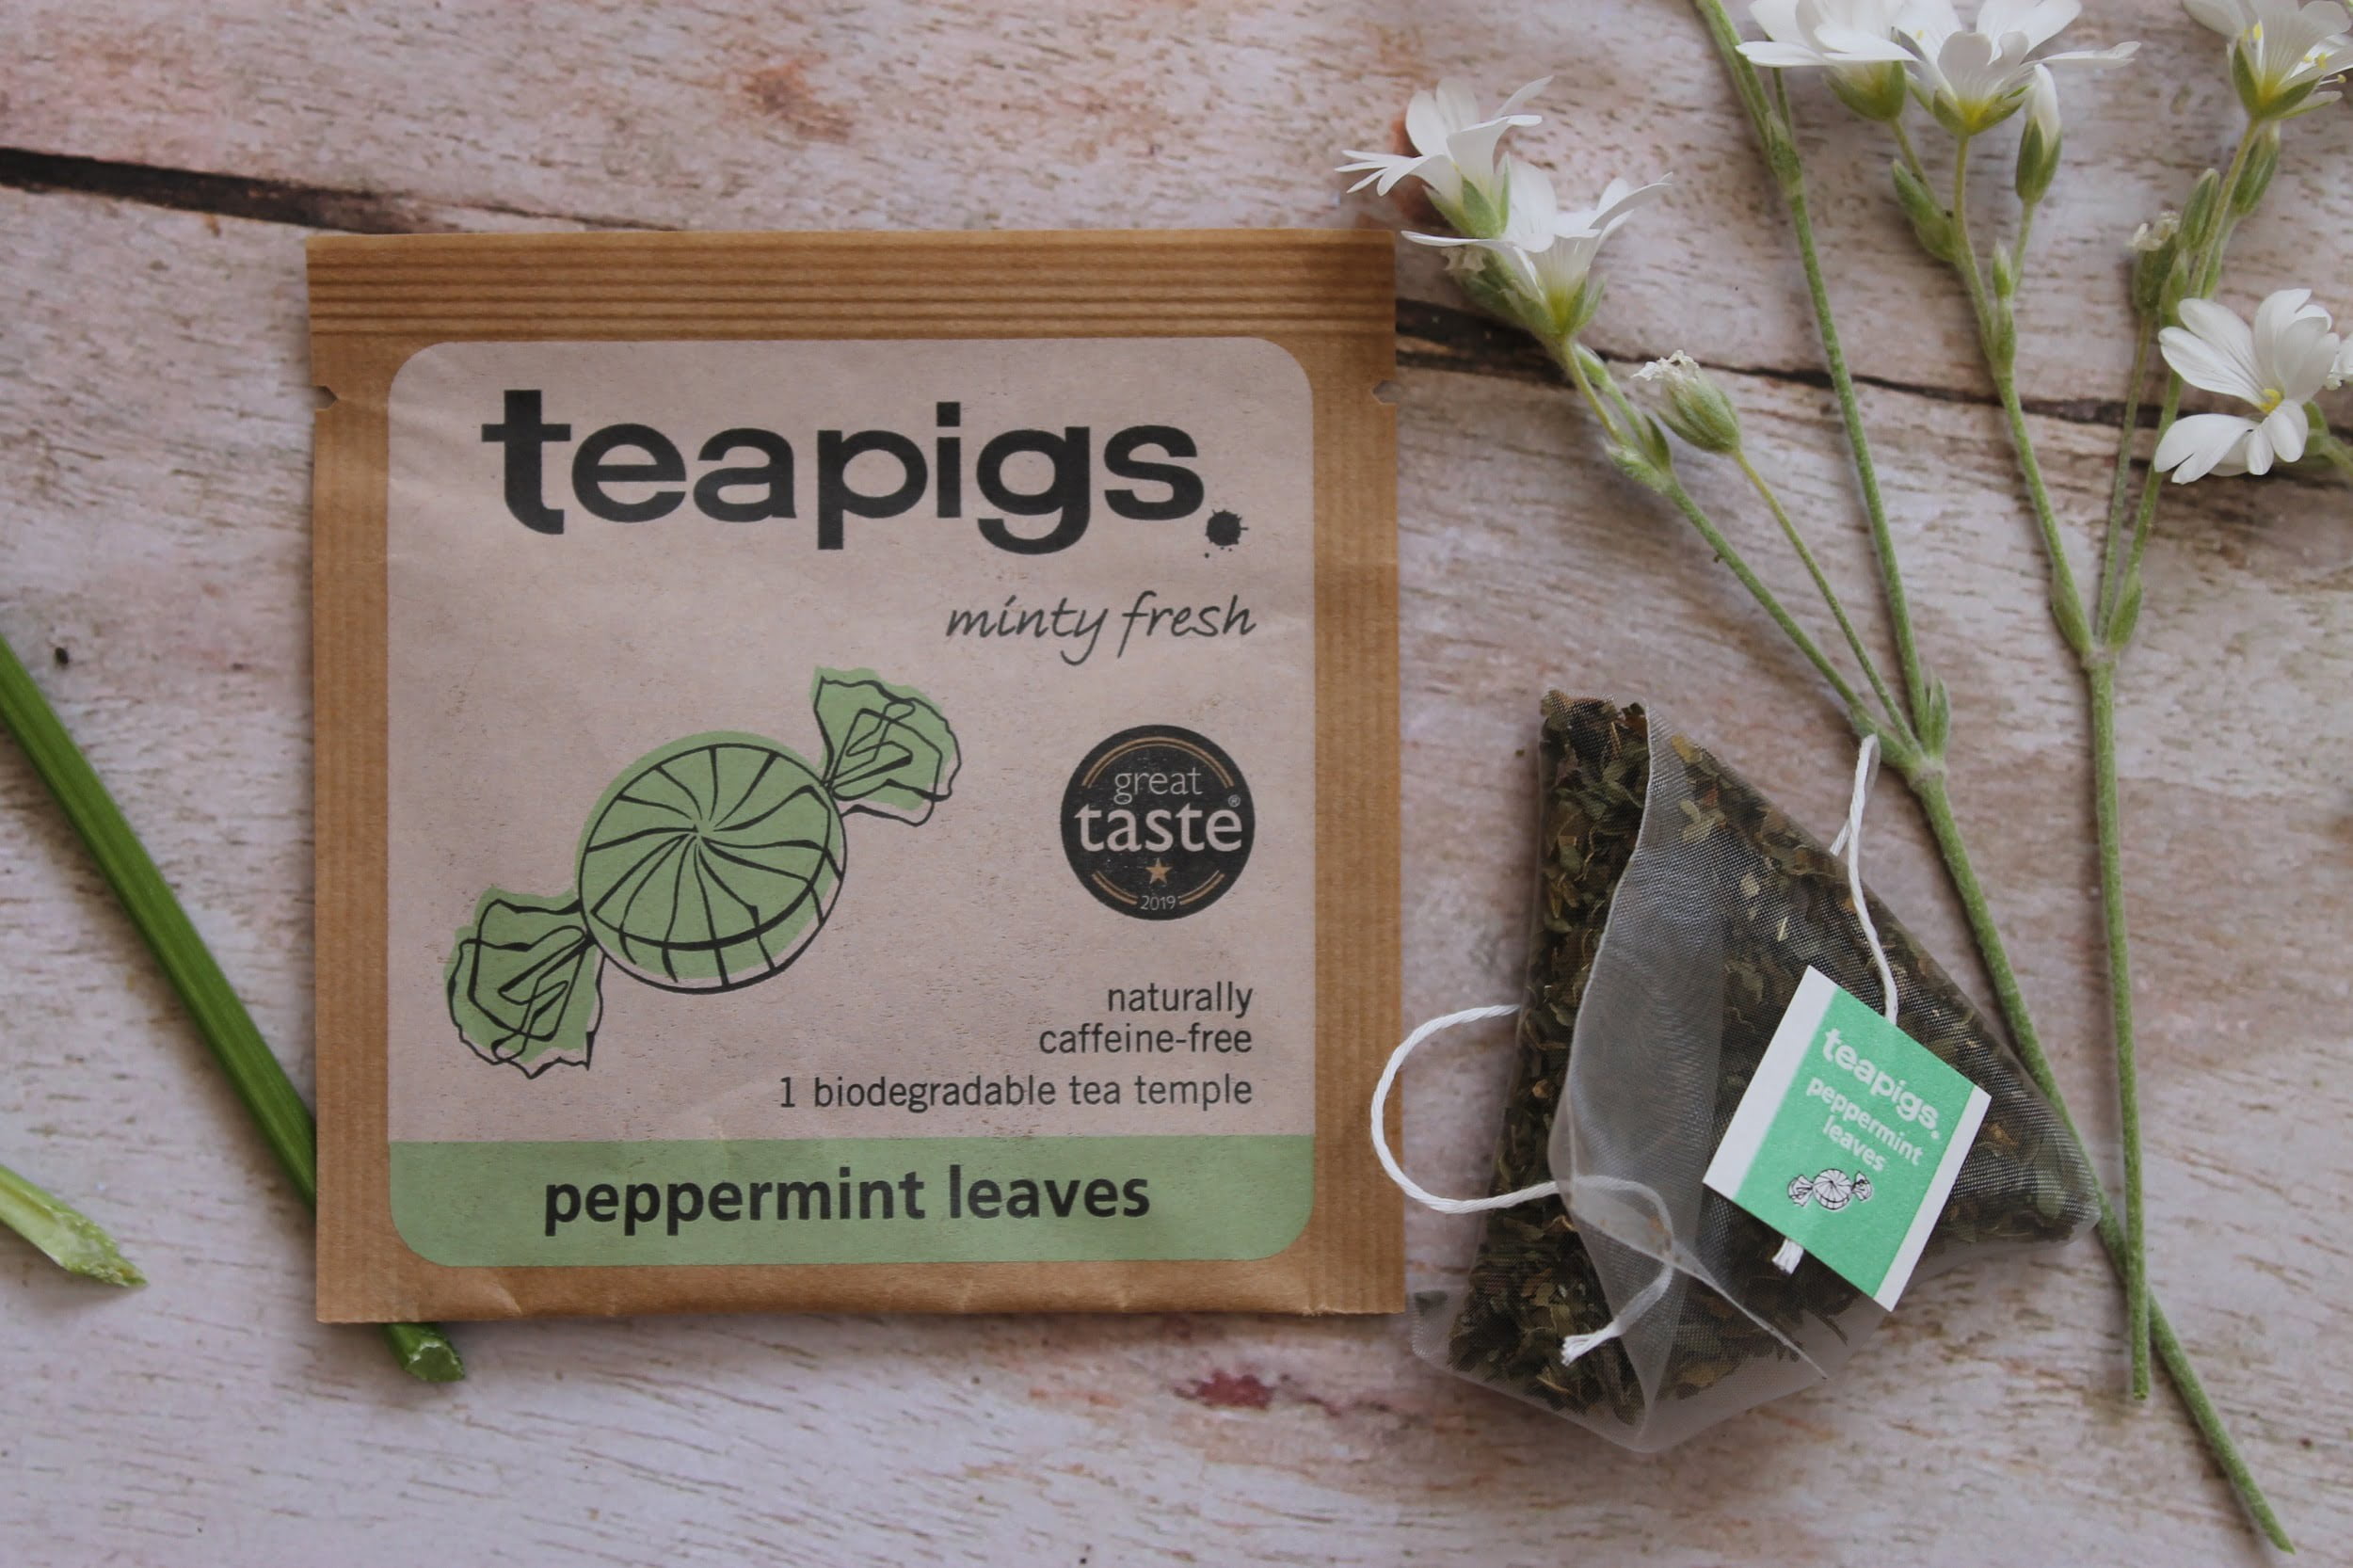 teapigs peppermint leaves teabag